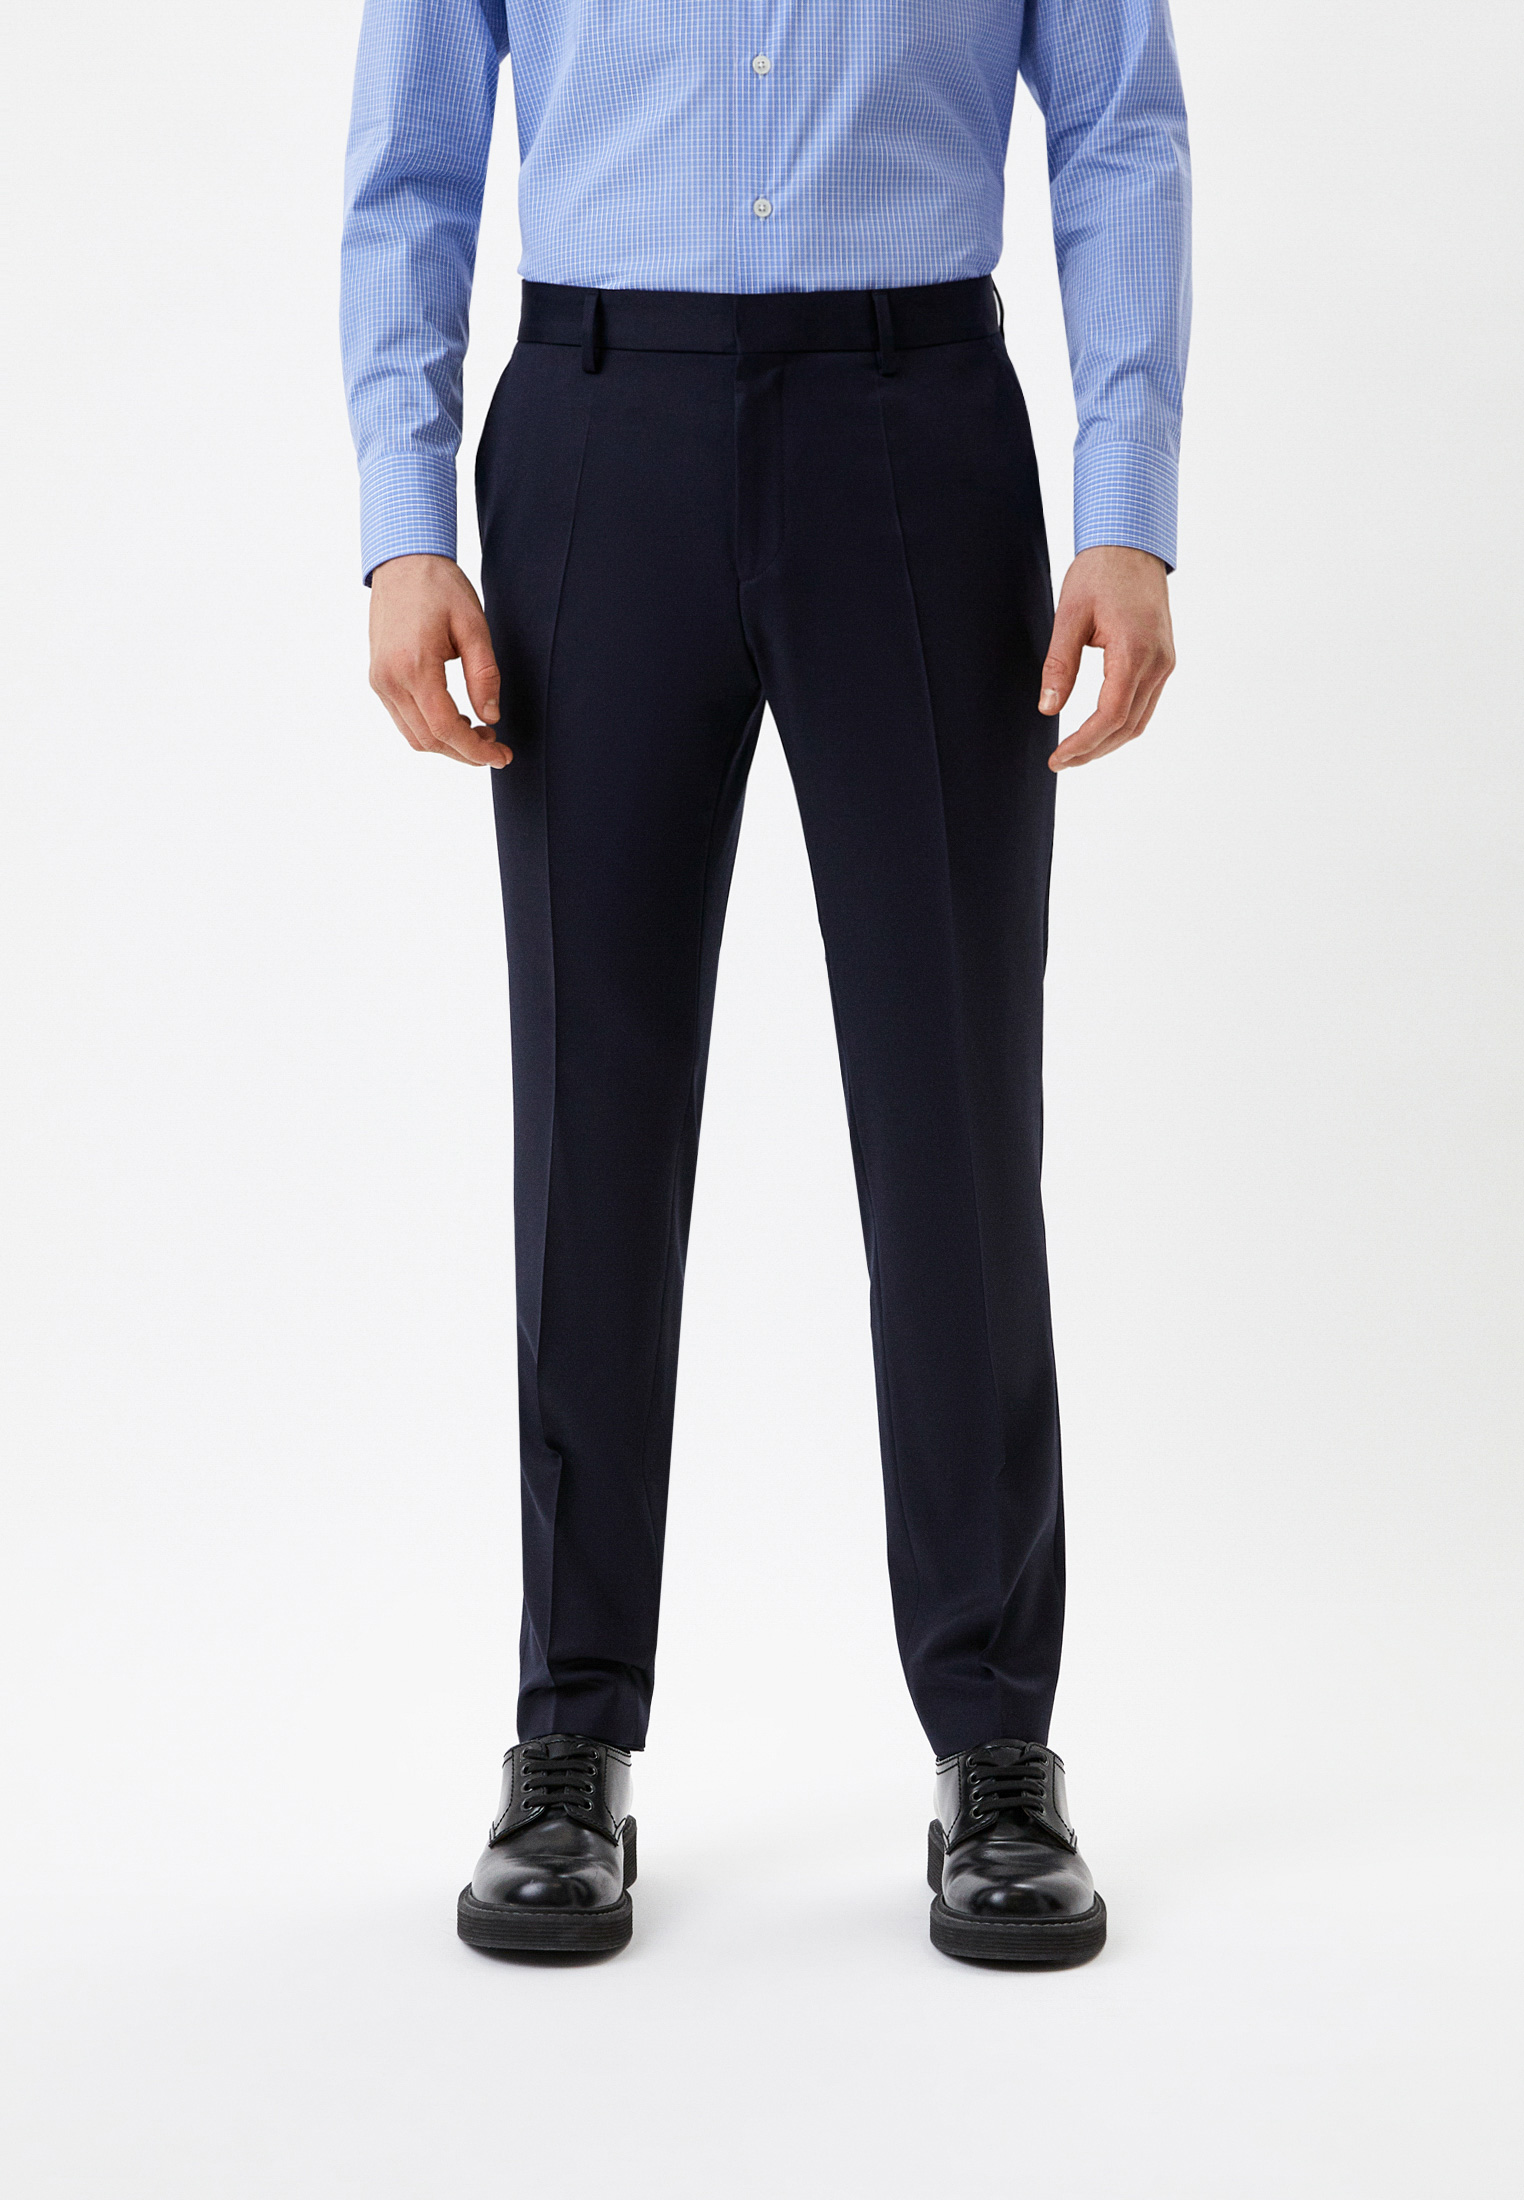 Мужские классические брюки Boss (Босс) 50469174: изображение 1